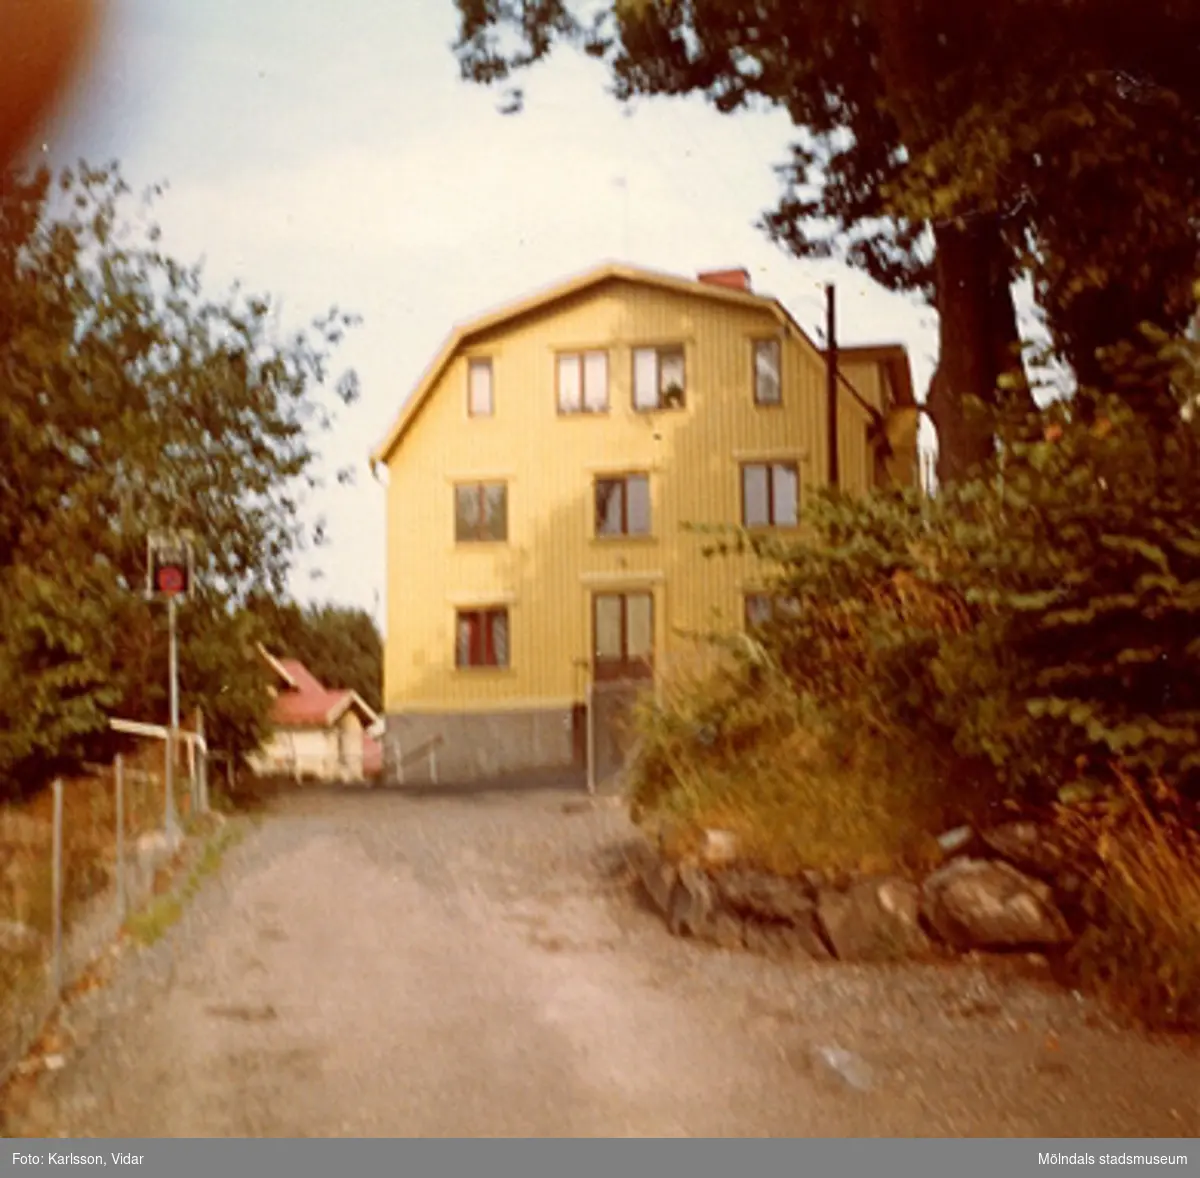 Roten G9, Norénska stiftelsens bostadshus (Johannehöjd), år 1972.